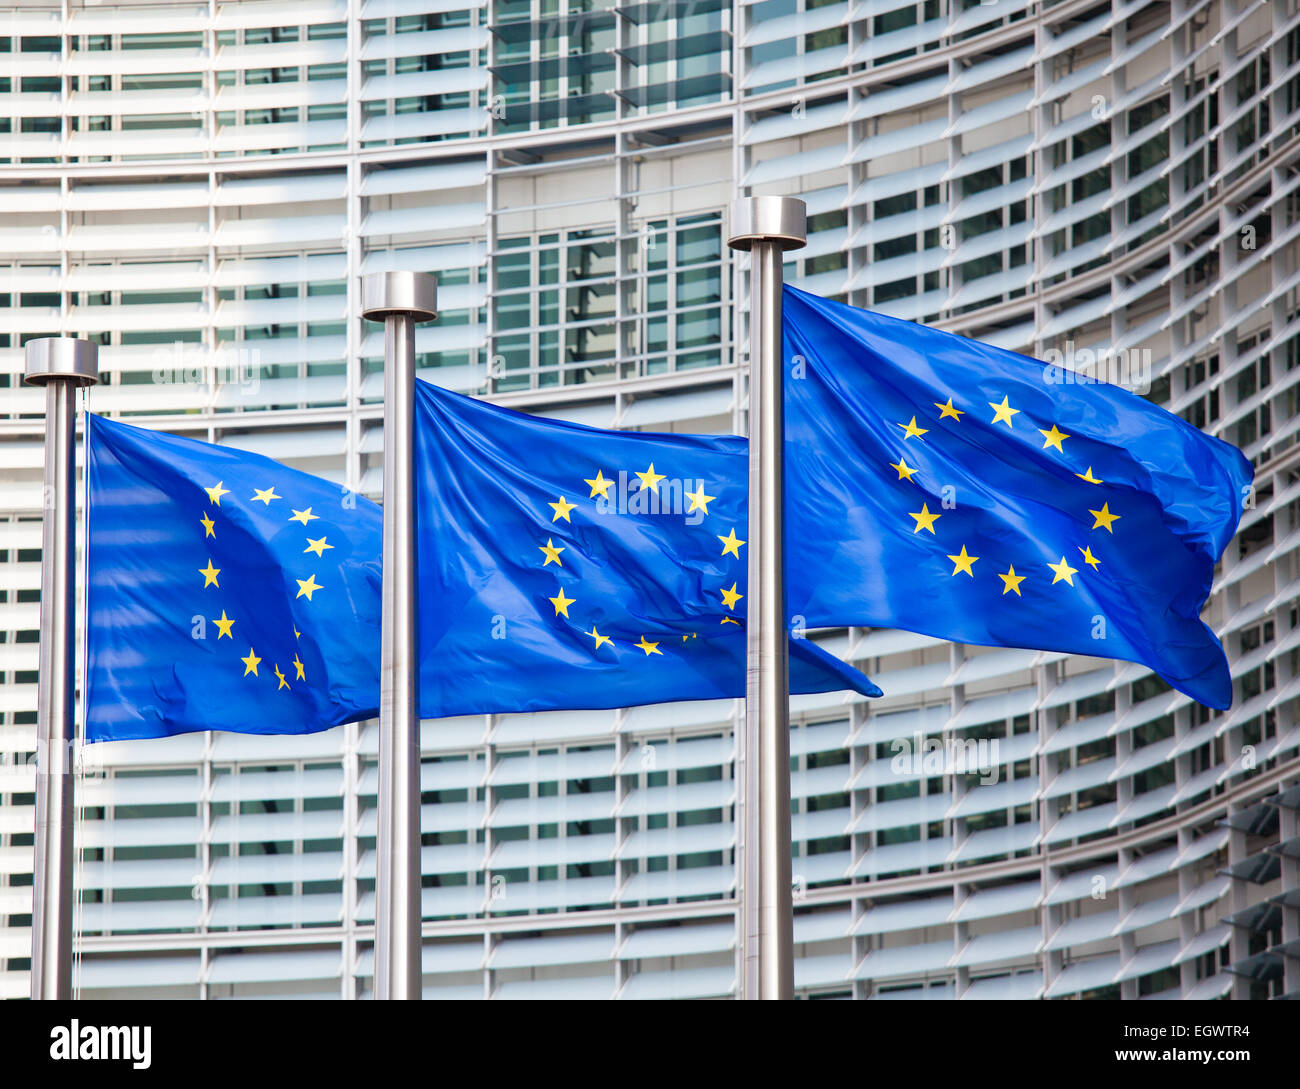 Drapeaux Européens en face de l'immeuble Berlaymont, siège de la Commission européenne à Bruxelles. Banque D'Images